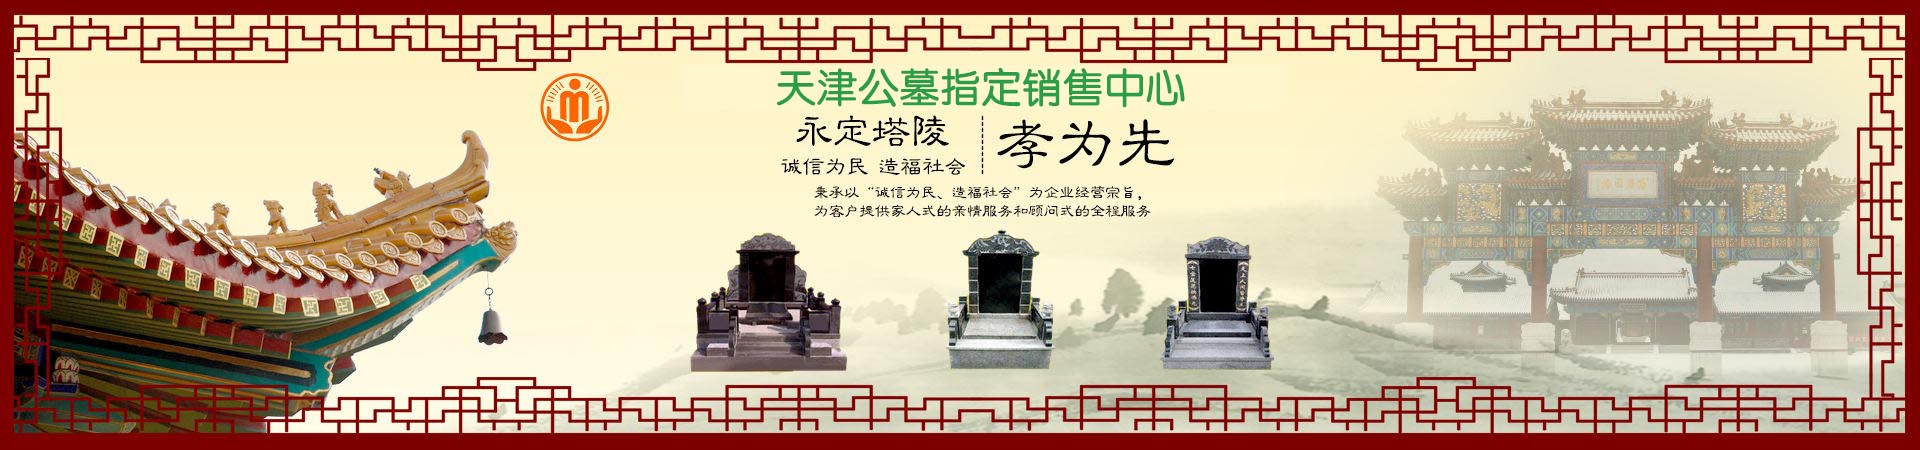 天津东华林公墓如何联系请联系